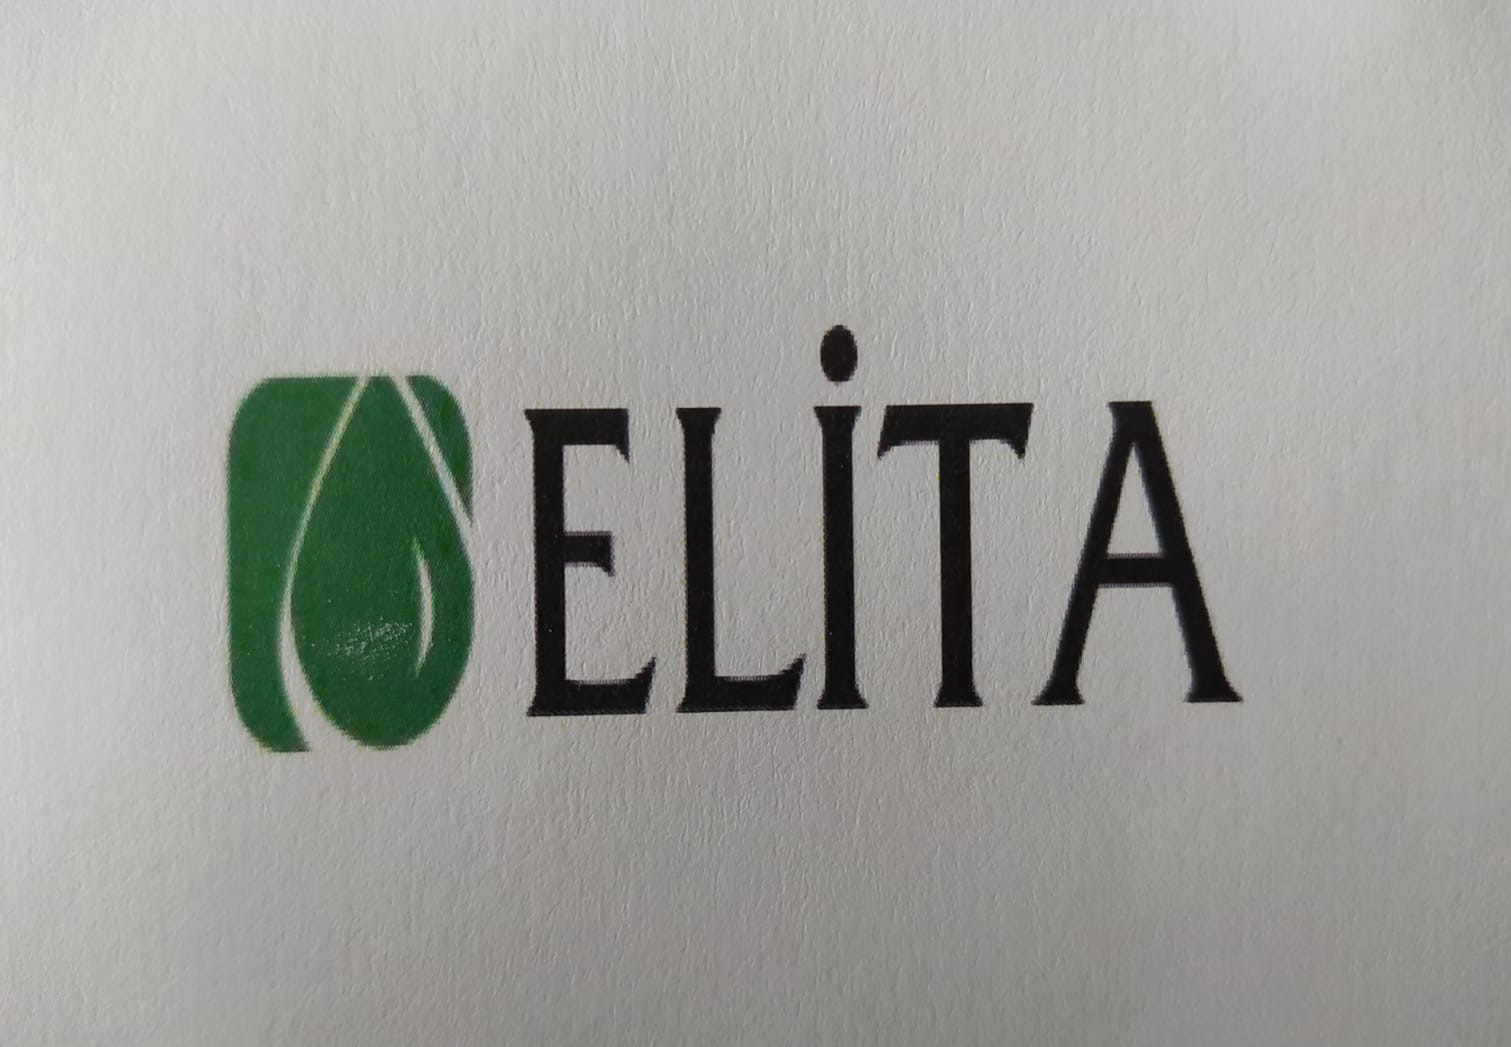 Elita Edible Oils Company